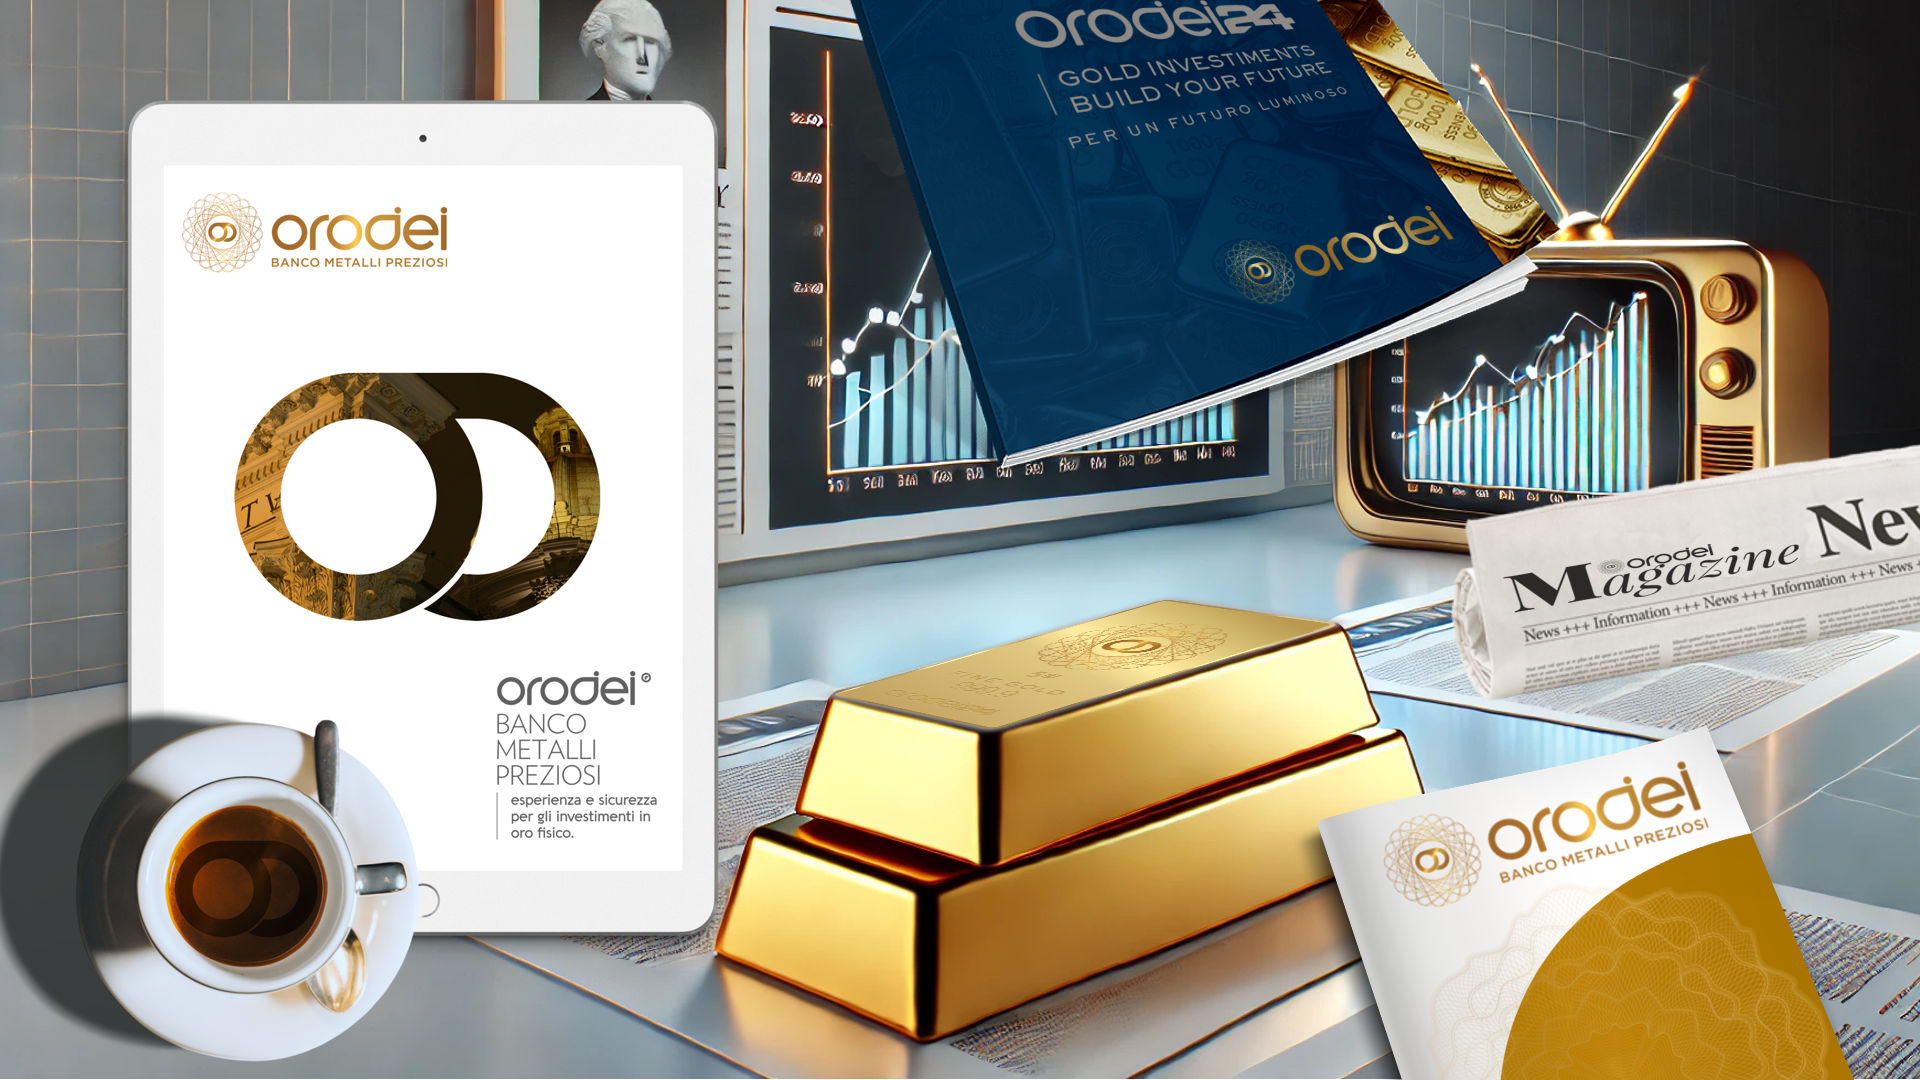 Orodei Banco Metalli Preziosi: Cinque Motivi per Comprare Oro Secondo i Media e gli Esperti Finanziari Più Influenti